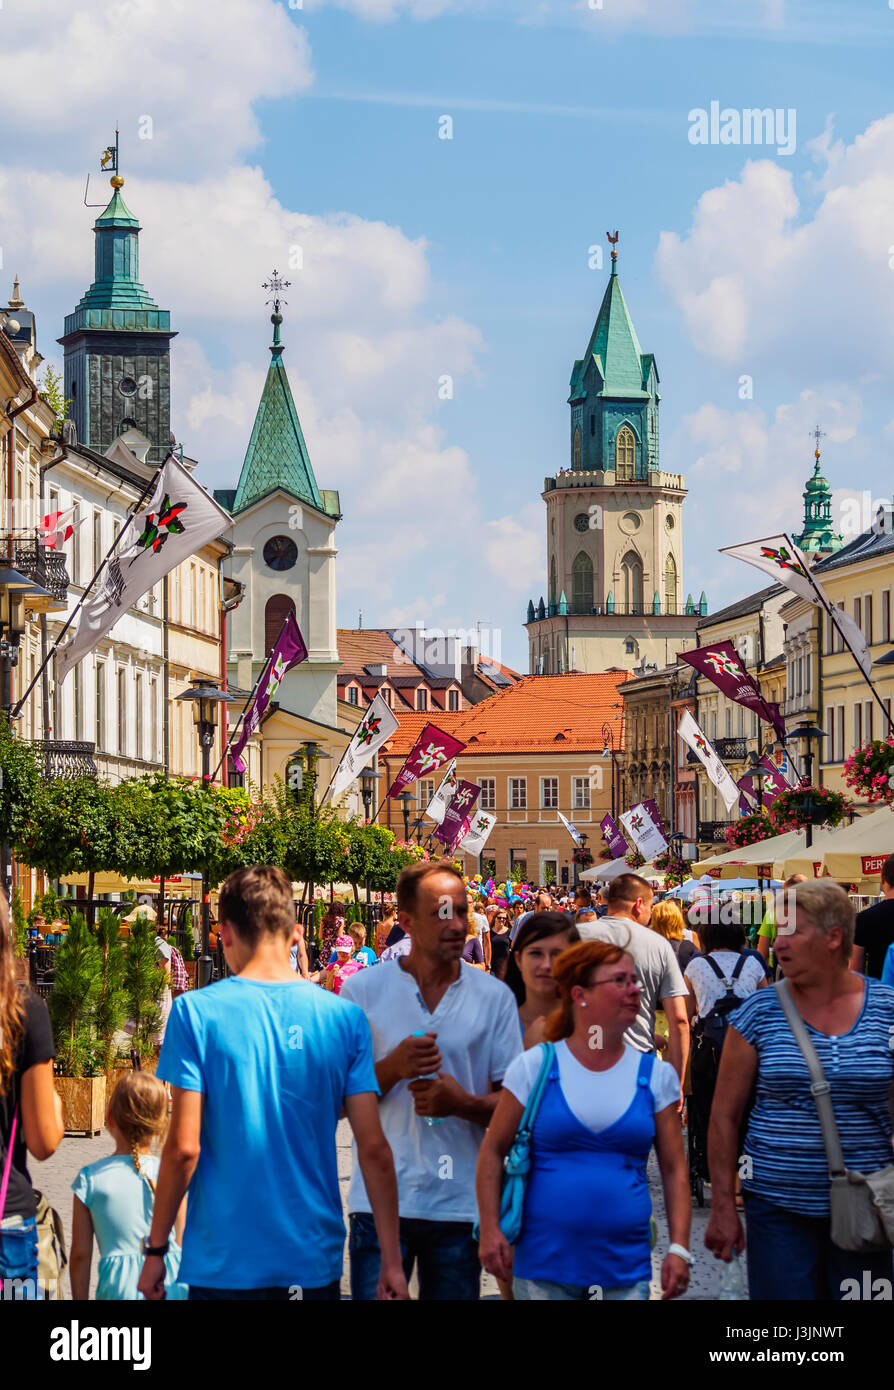 Lublin krakowskie przedmiescie hi-res stock photography and images - Alamy